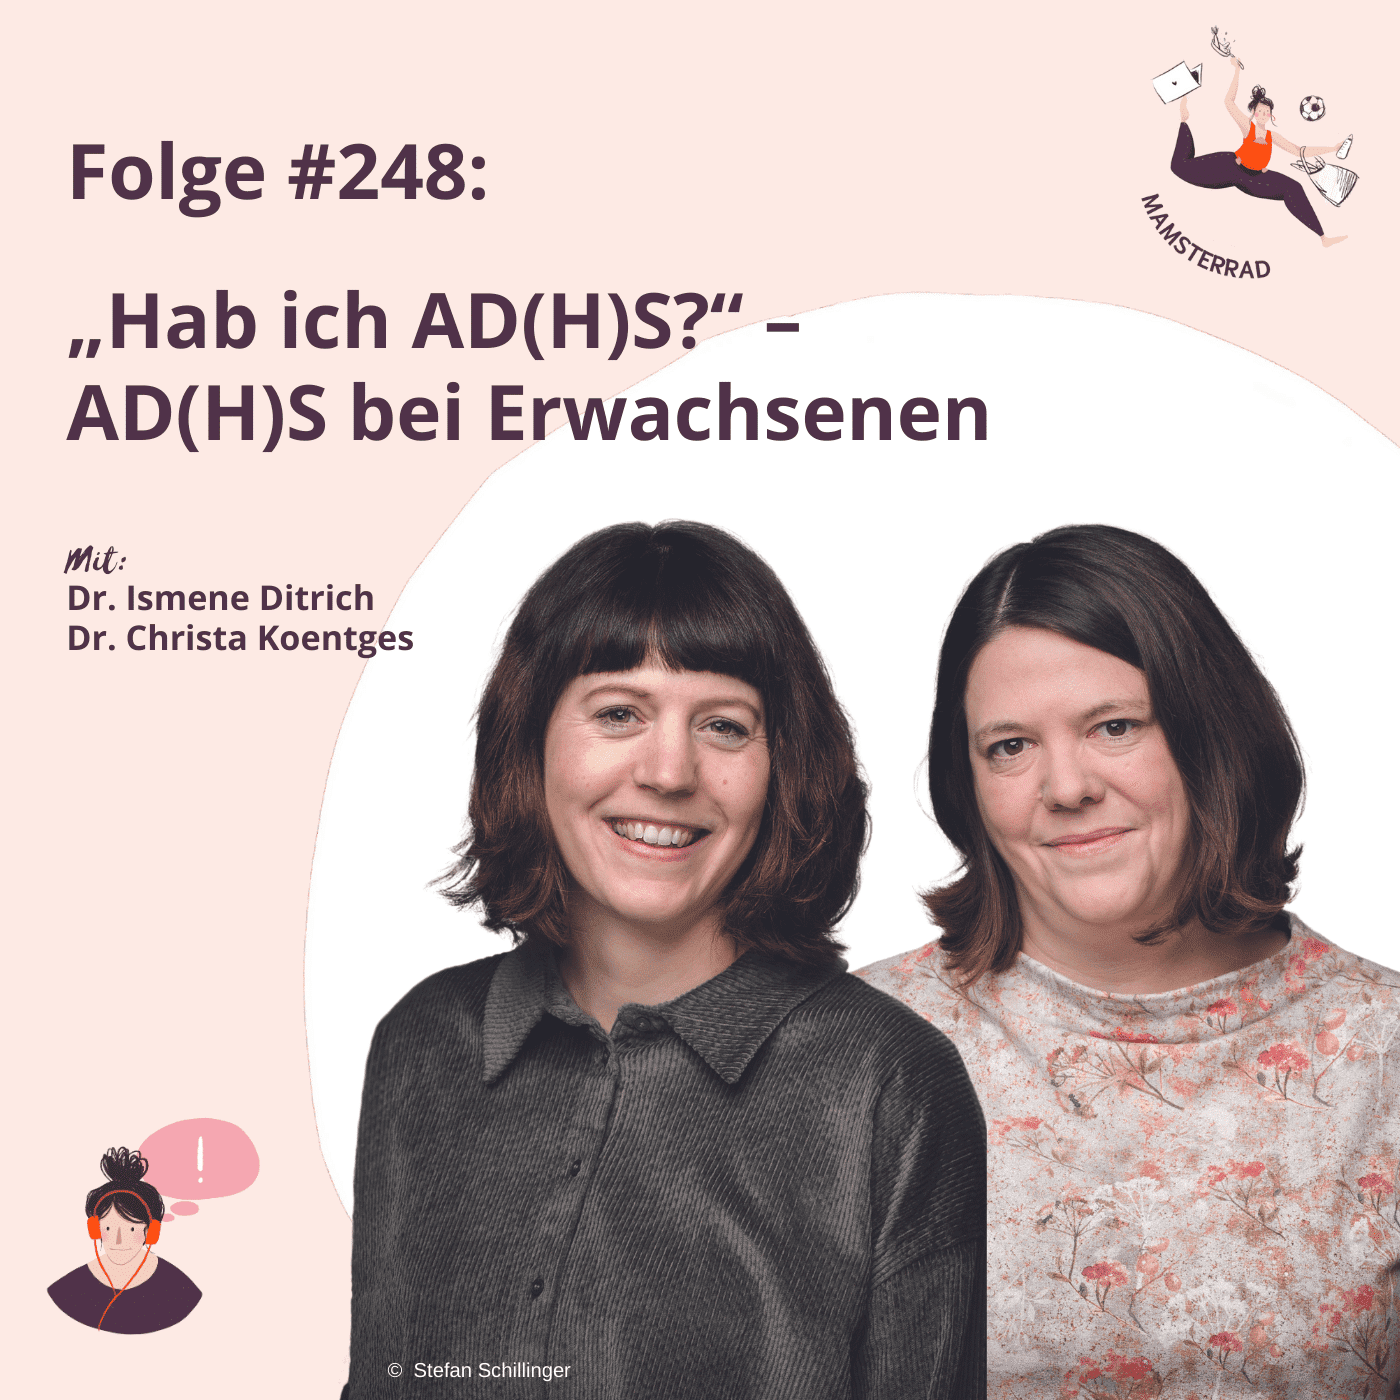 #248 „Hab ich AD(H)S?“ Mit Ismene Ditrich und Christa Koentges